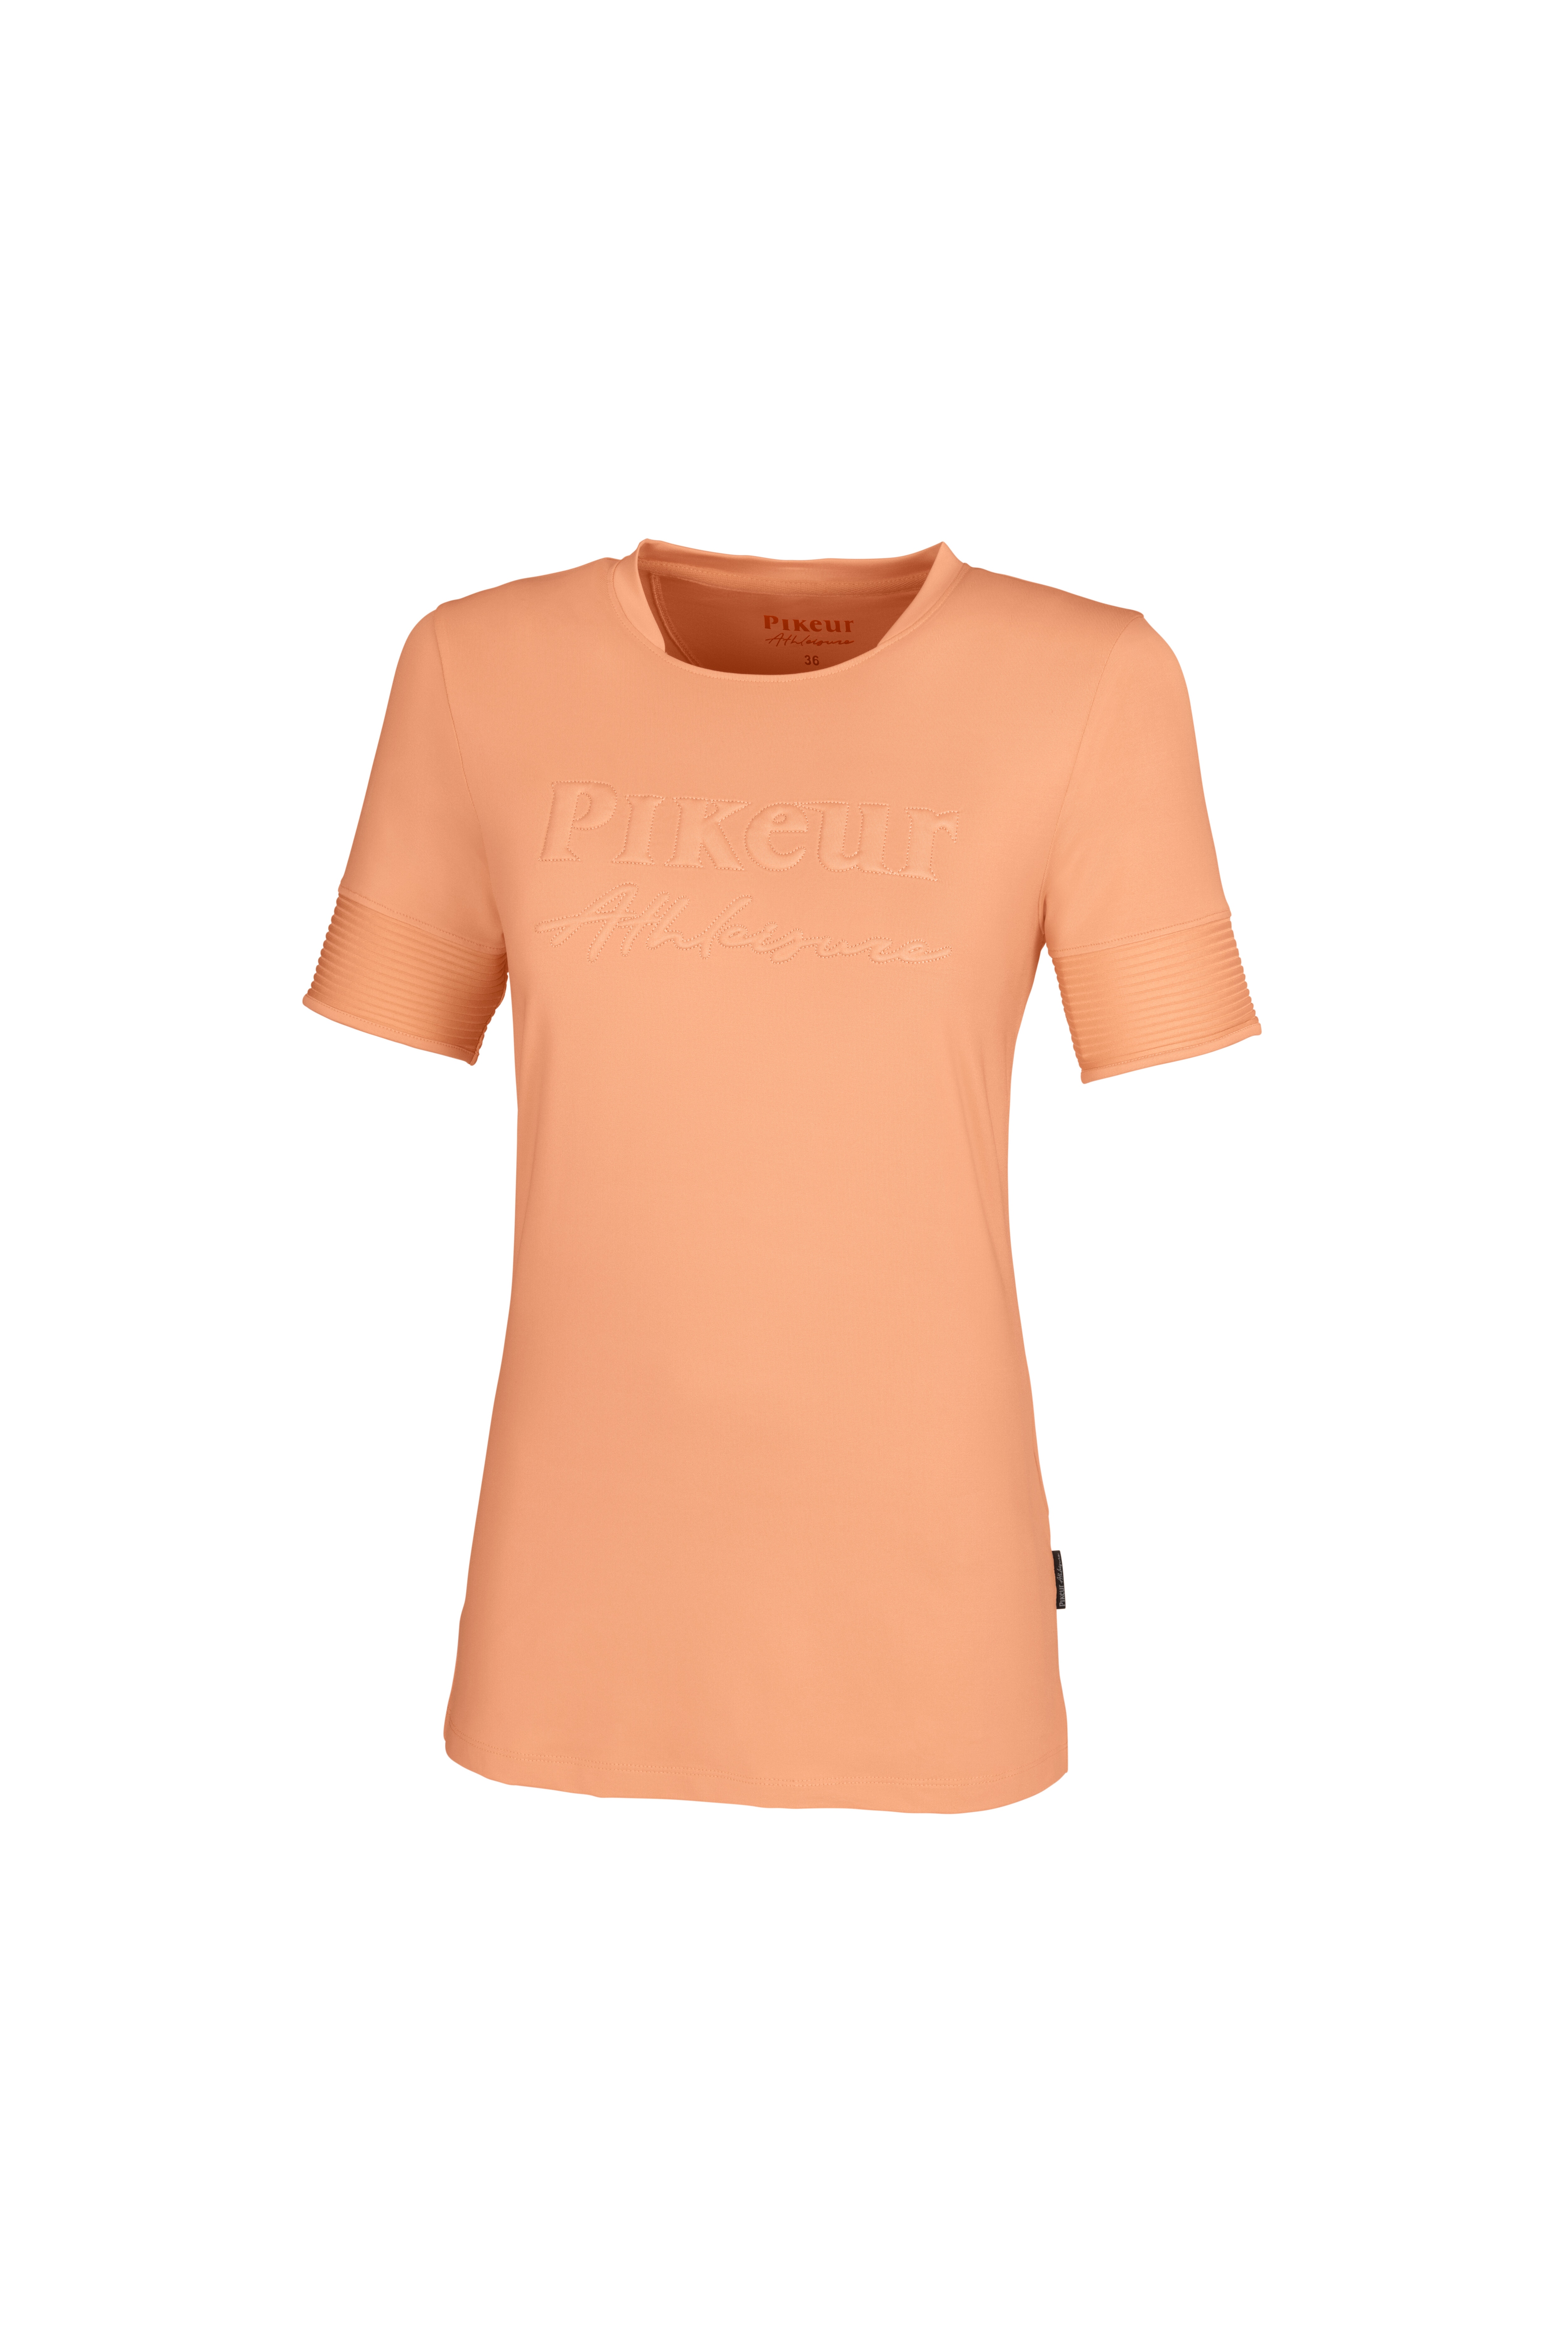 Loa T-Shirt - Mandarin